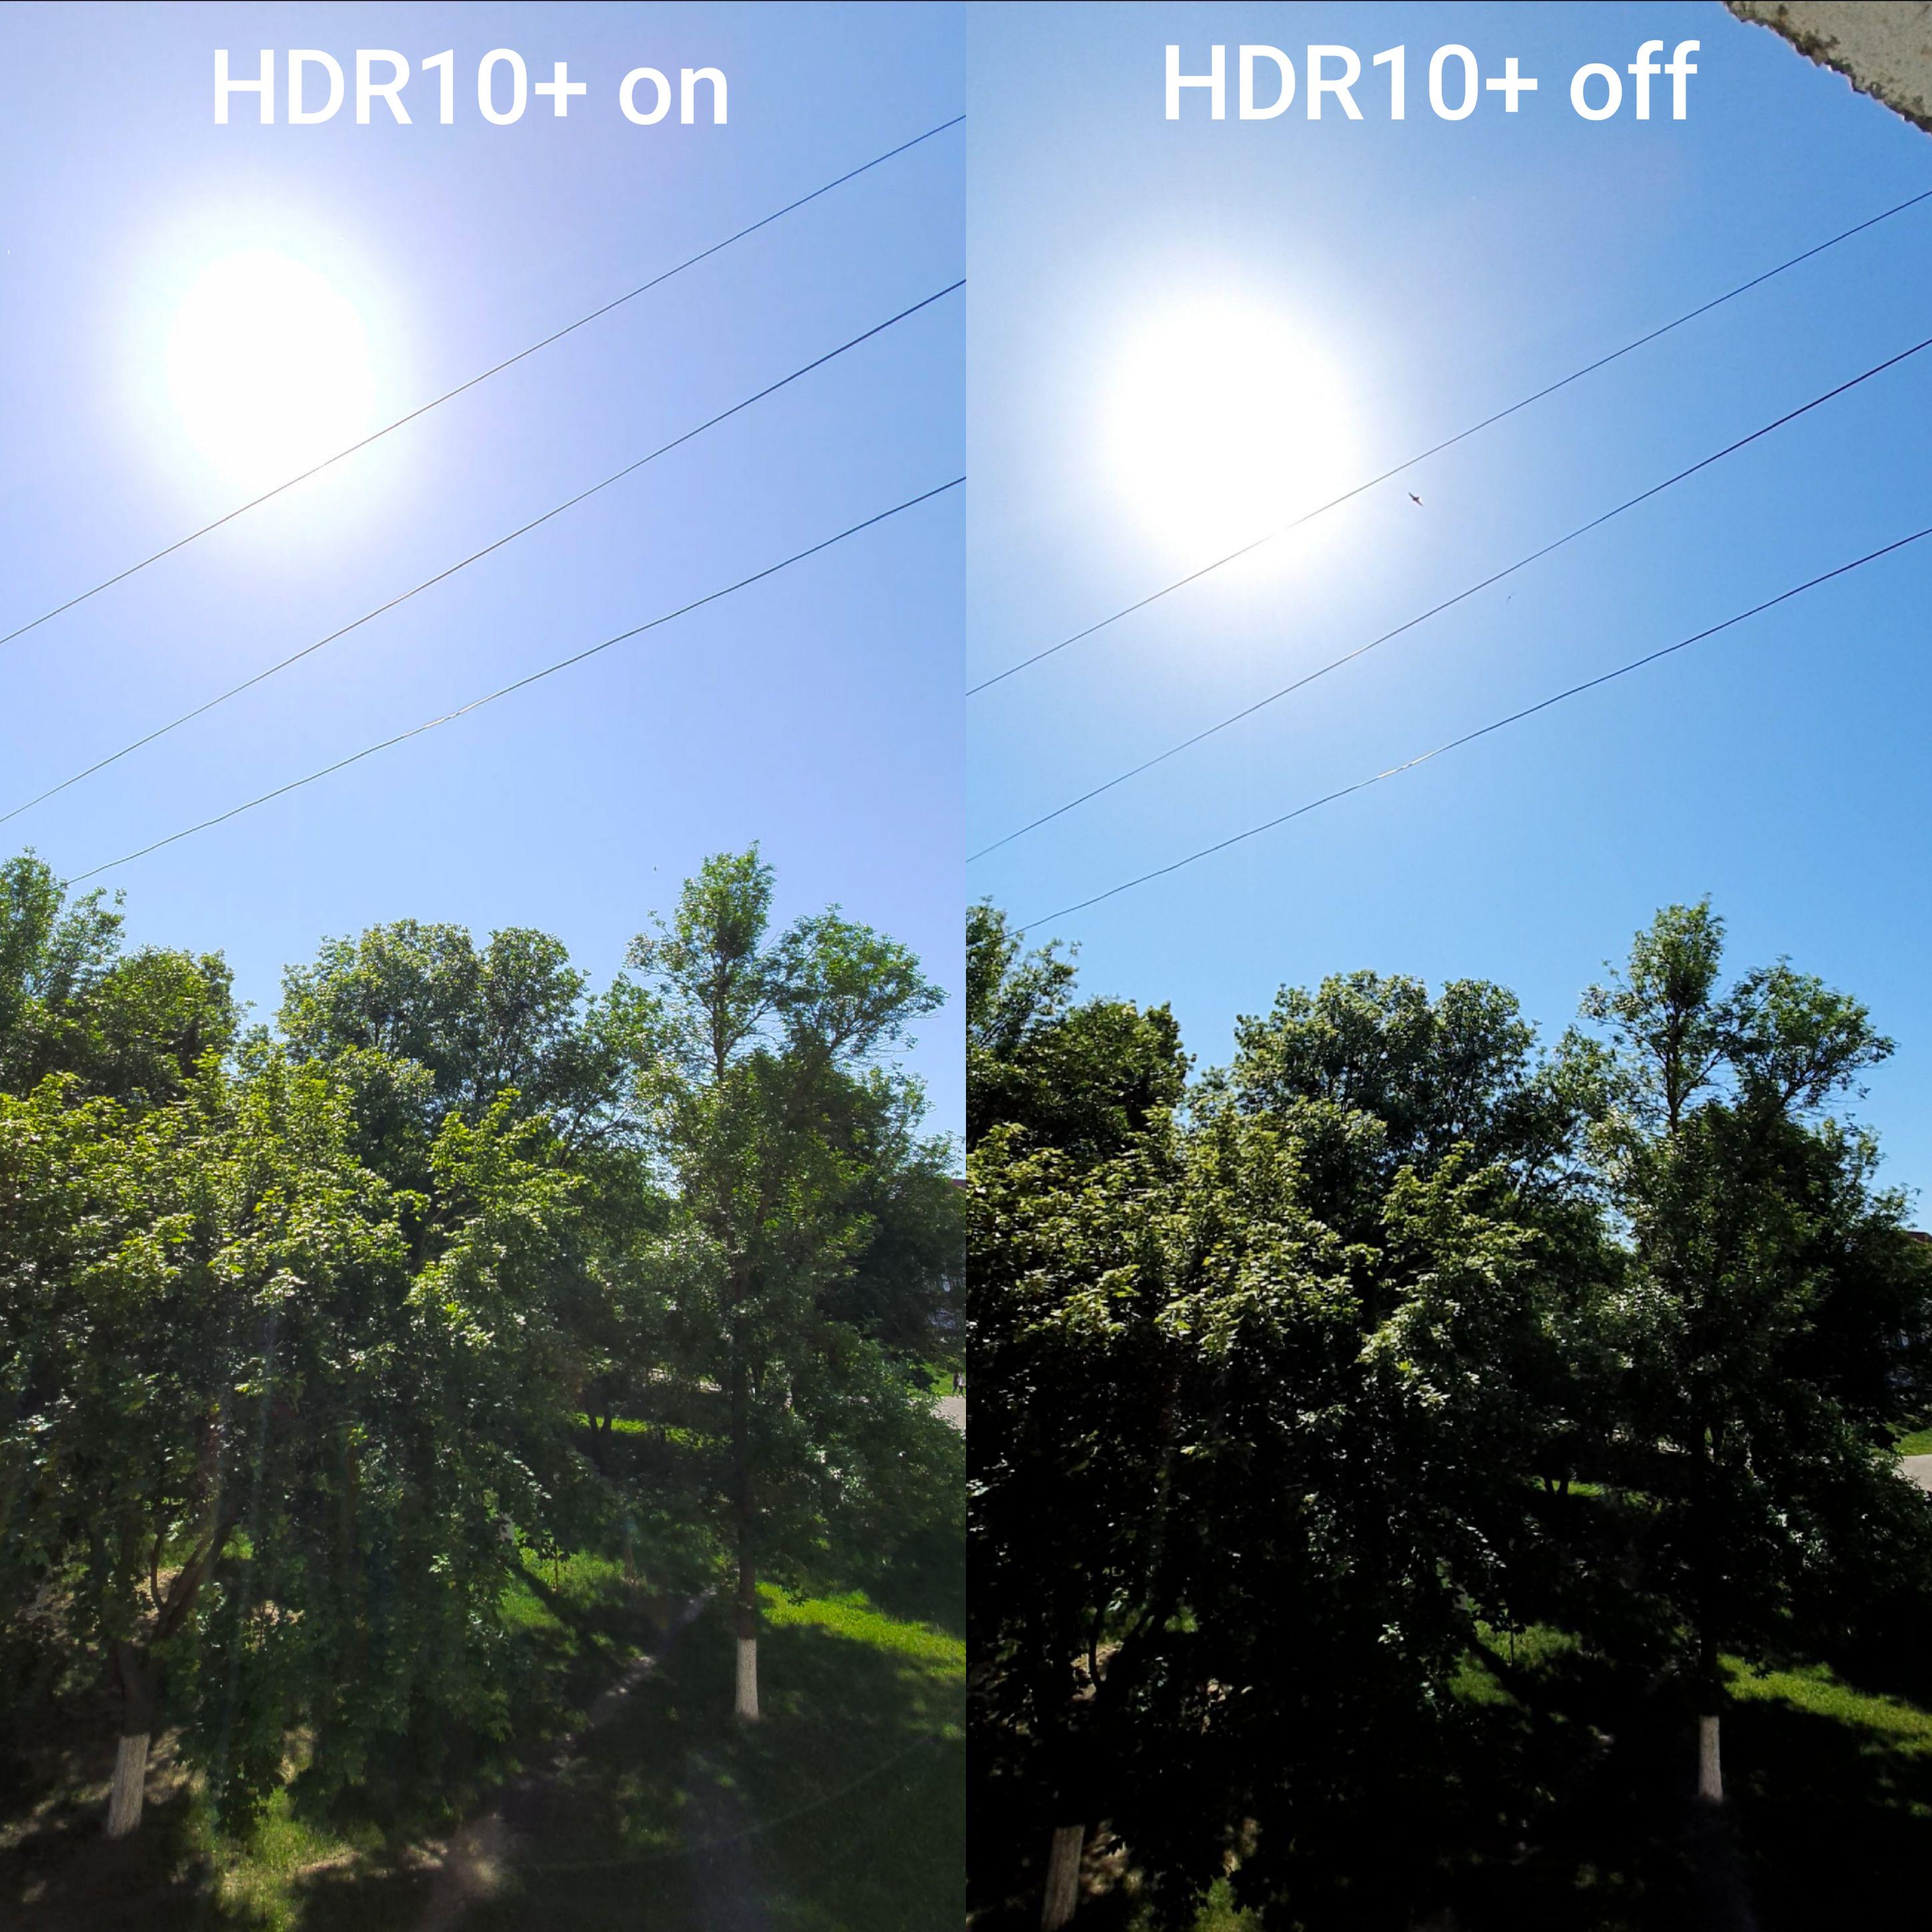 فیلم های HDR10+